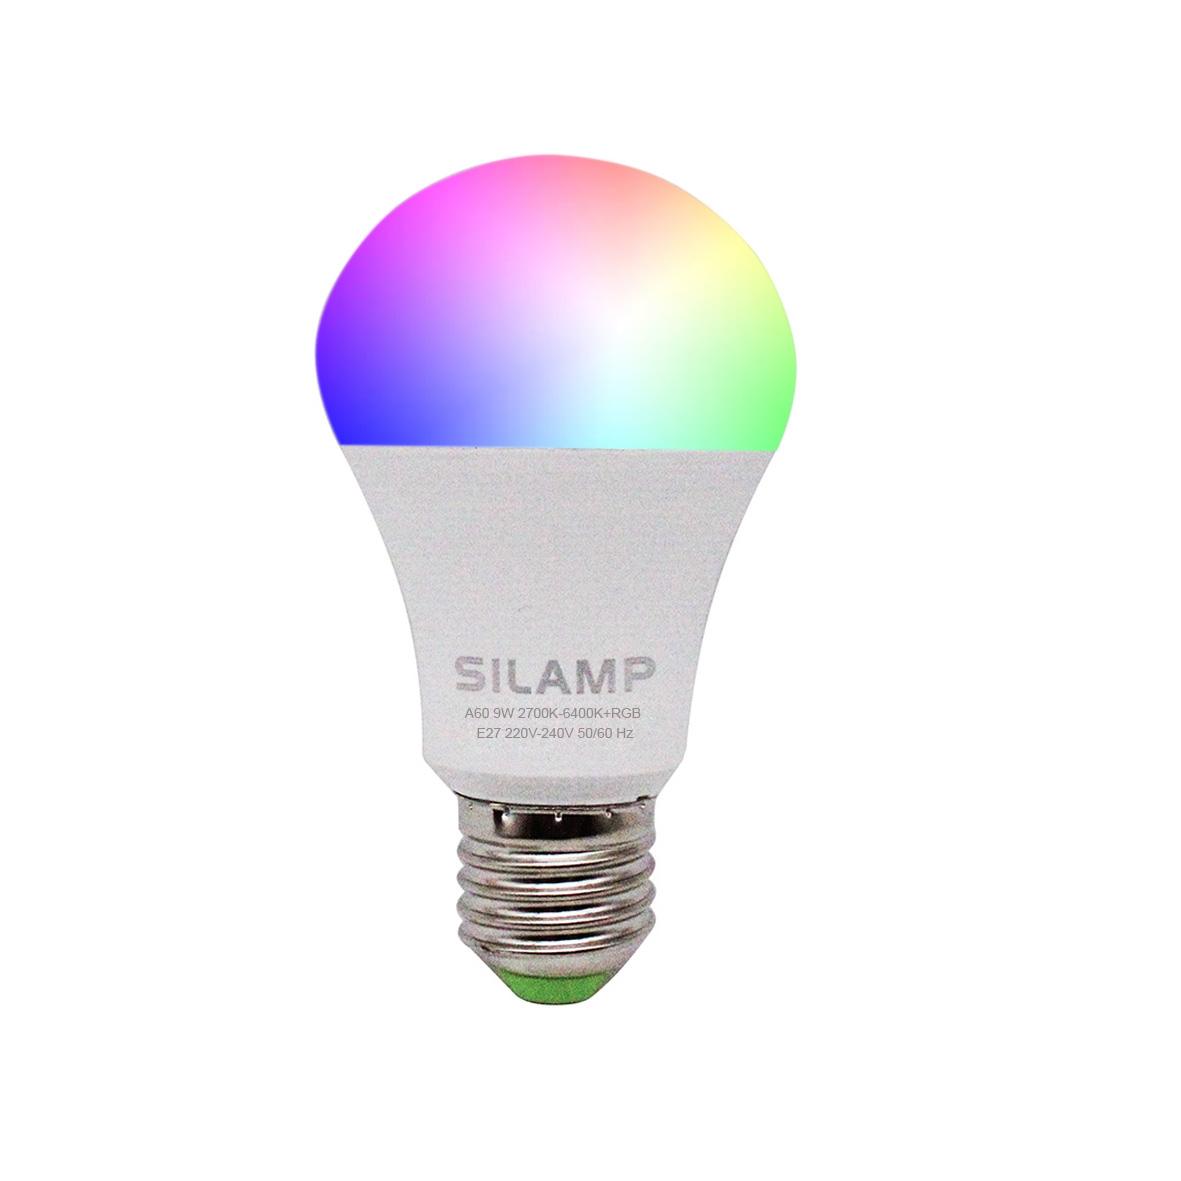 LAMPADINA LED SMART E27 A60 9W 220V RGBW CCT WIFI LUCE DIMMERABILE E REGOLABILE